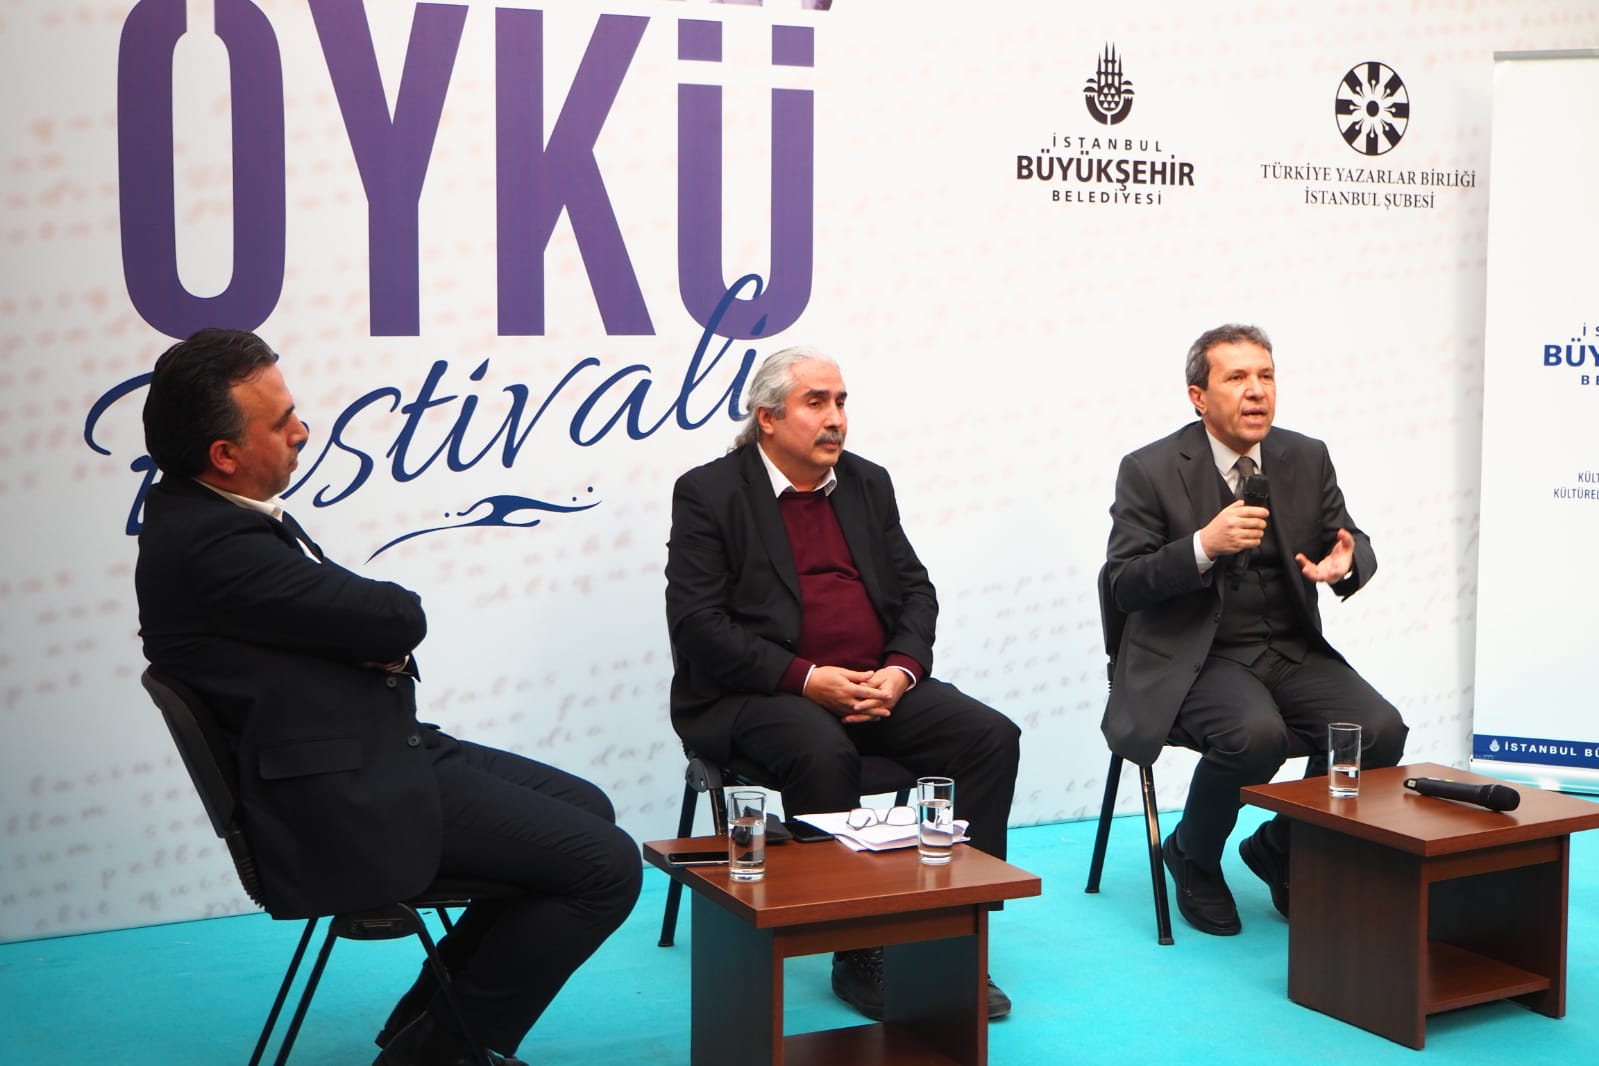 1.İstanbul Öykü Festivali Başladı